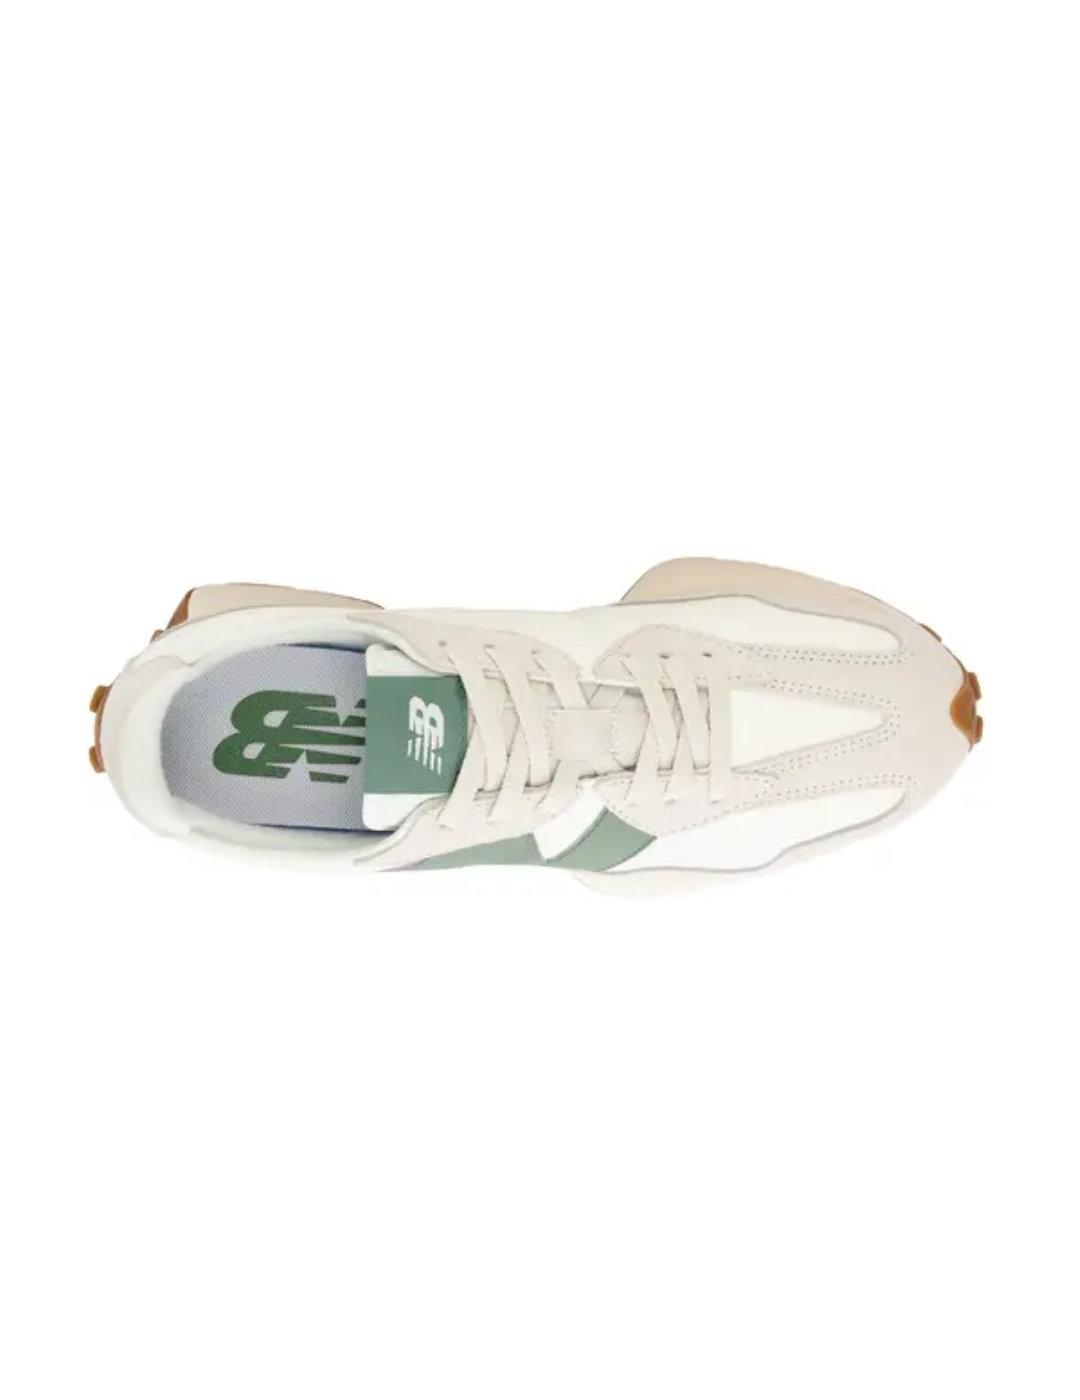 Zapatillas New Balance U327LX blancas N verde de hombre